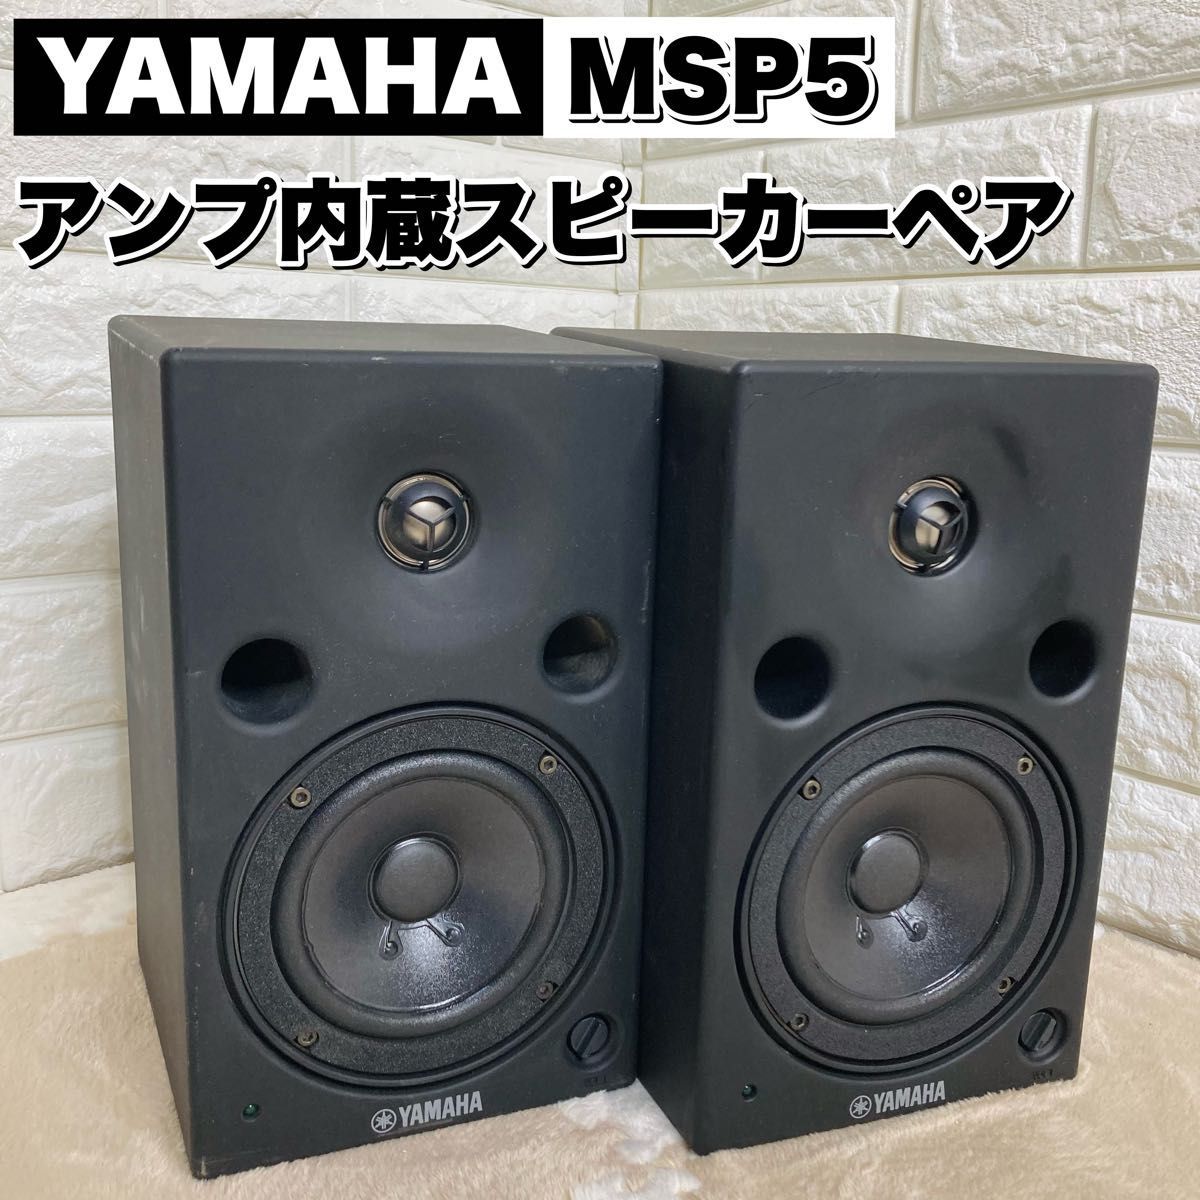 YAMAHA アンプ内蔵スタジオモニタースピーカー MSP5 ペア 2way-